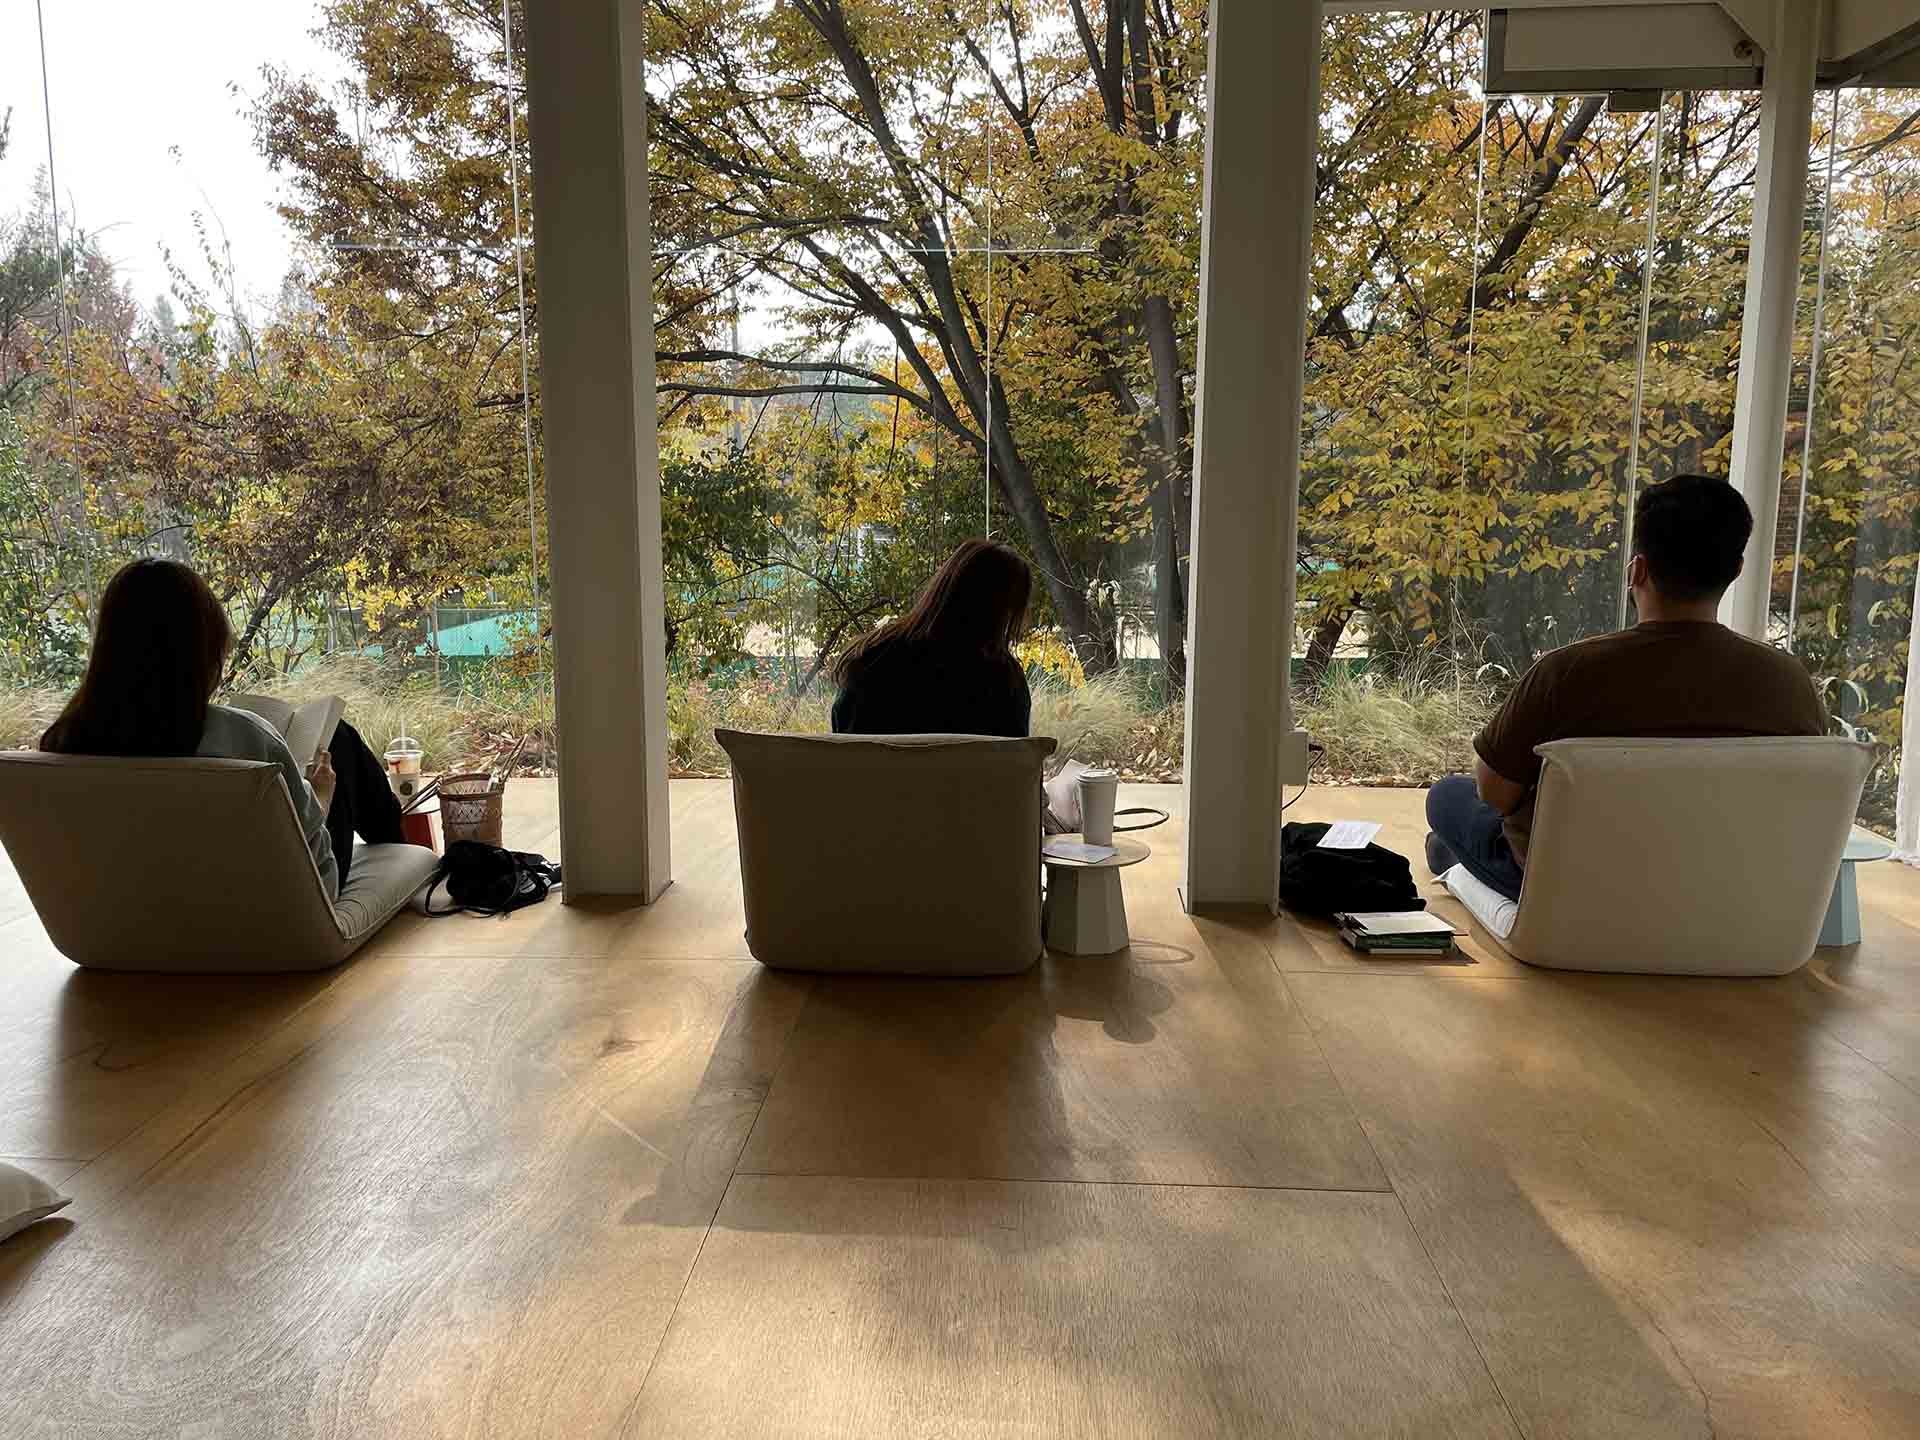 Tại quán cà phê Green Lab ở Seoul, khách hàng có thể tìm thấy những khoảng không gian tĩnh lặng để thư giãn sau những căng thẳng của cuộc sống hàng ngày. (Nguồn: The Washington Post)